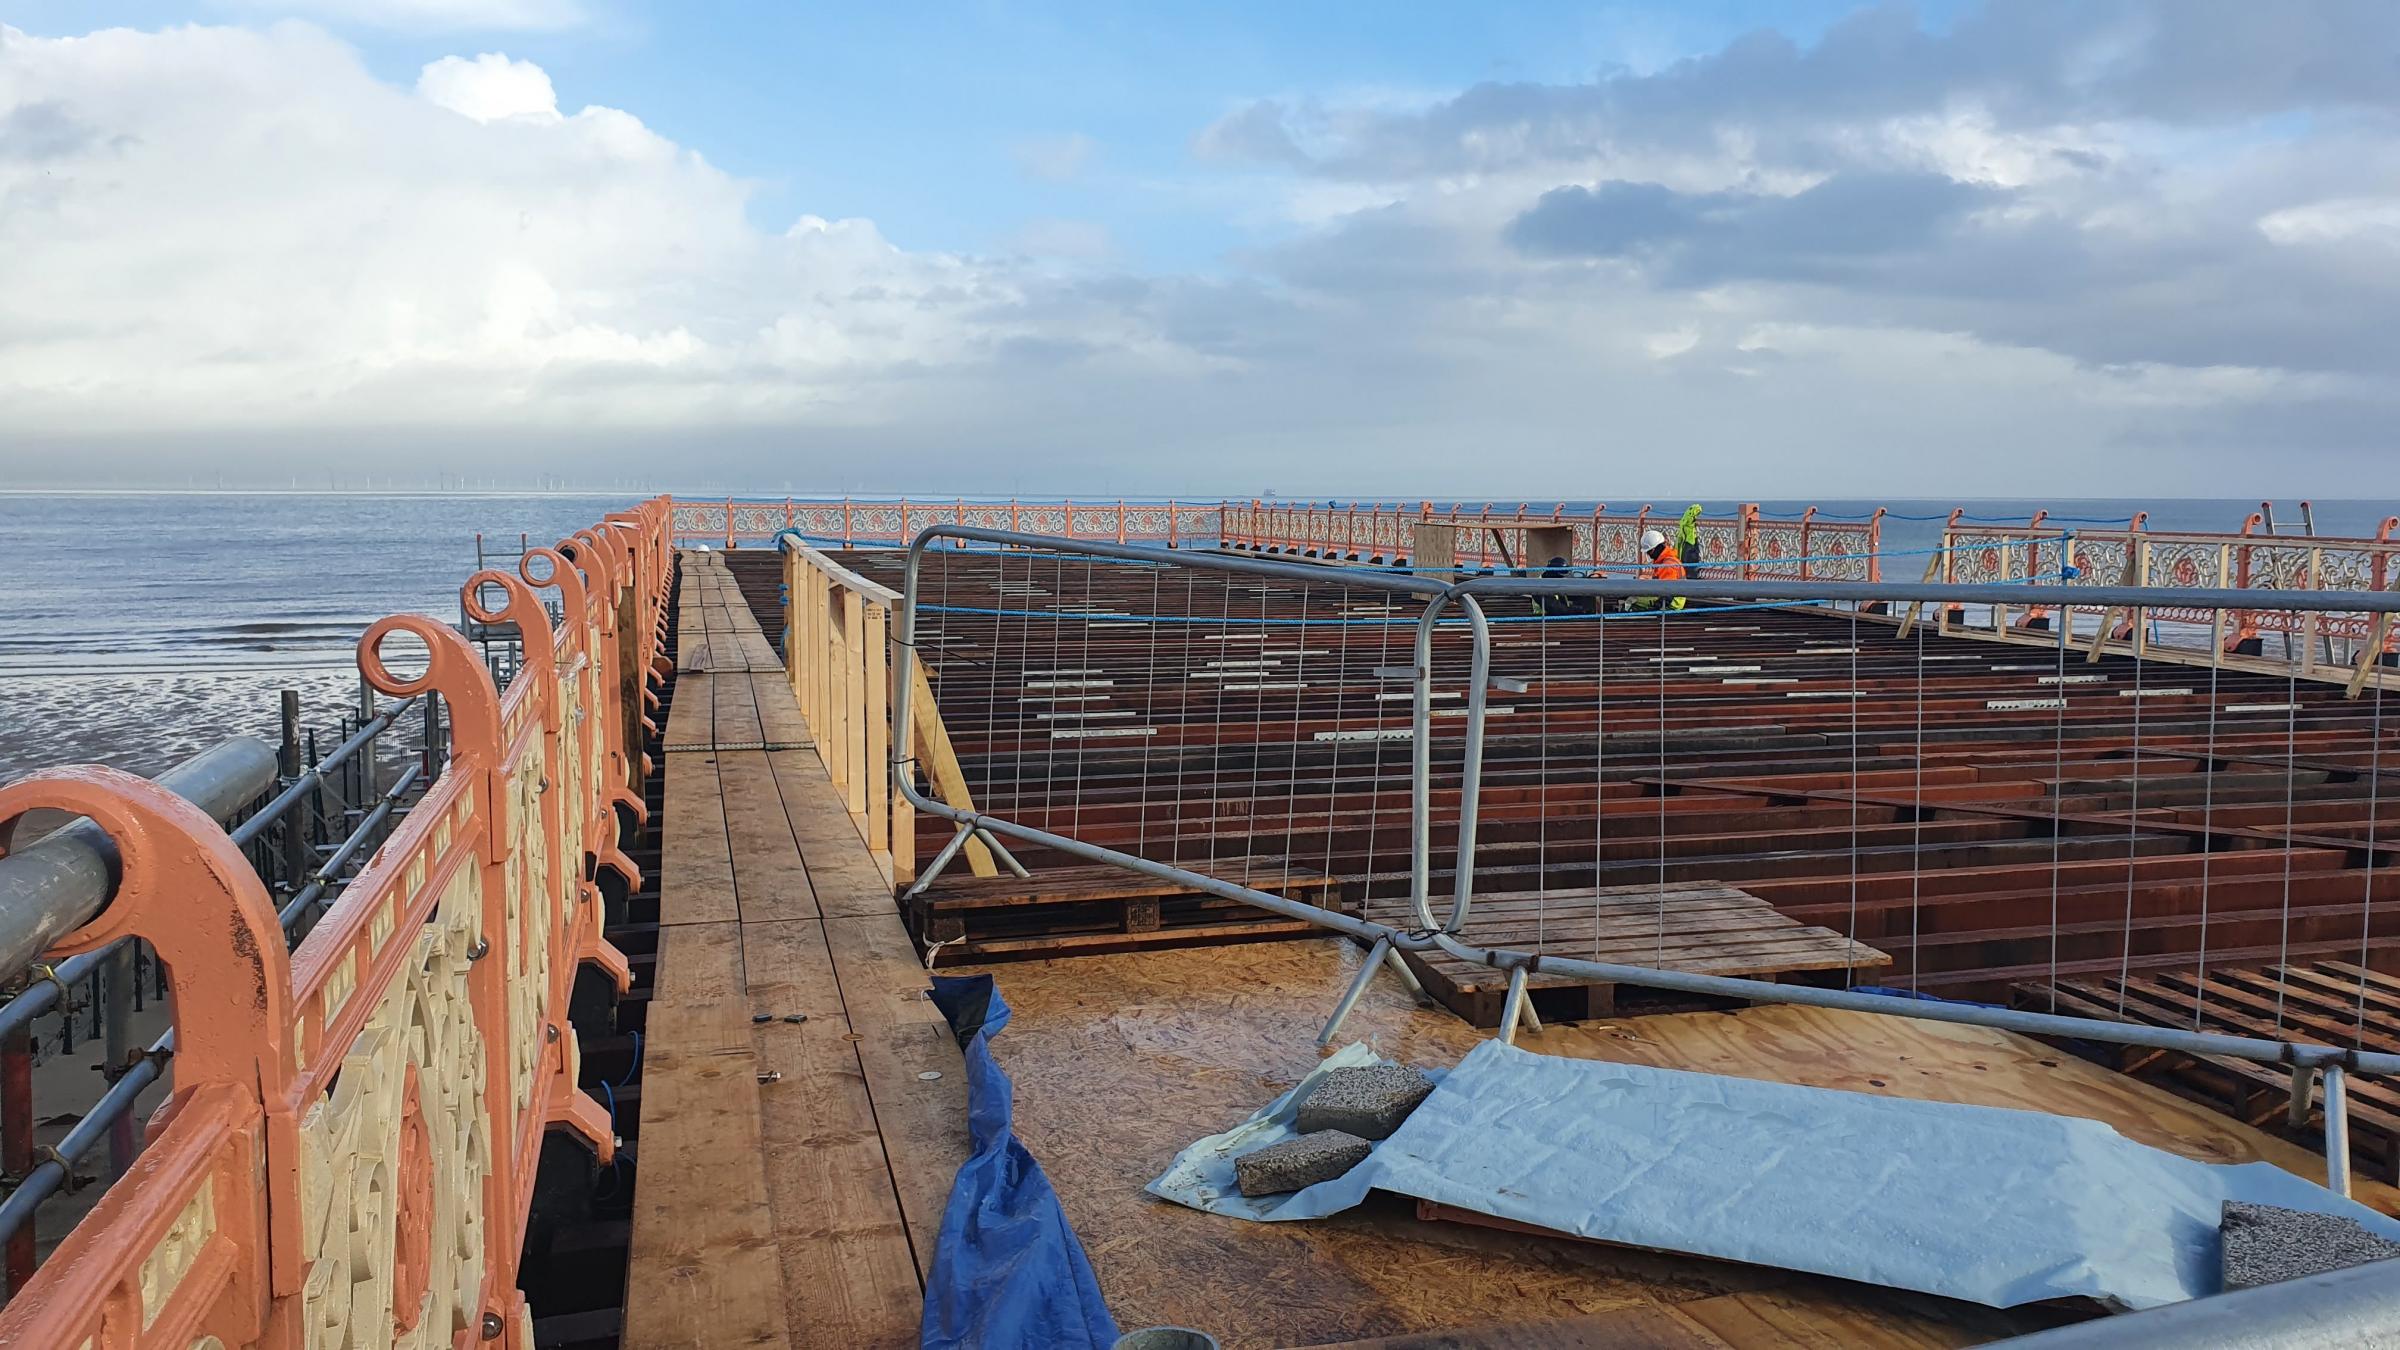 The new pier is taking shape in Colwyn Bay